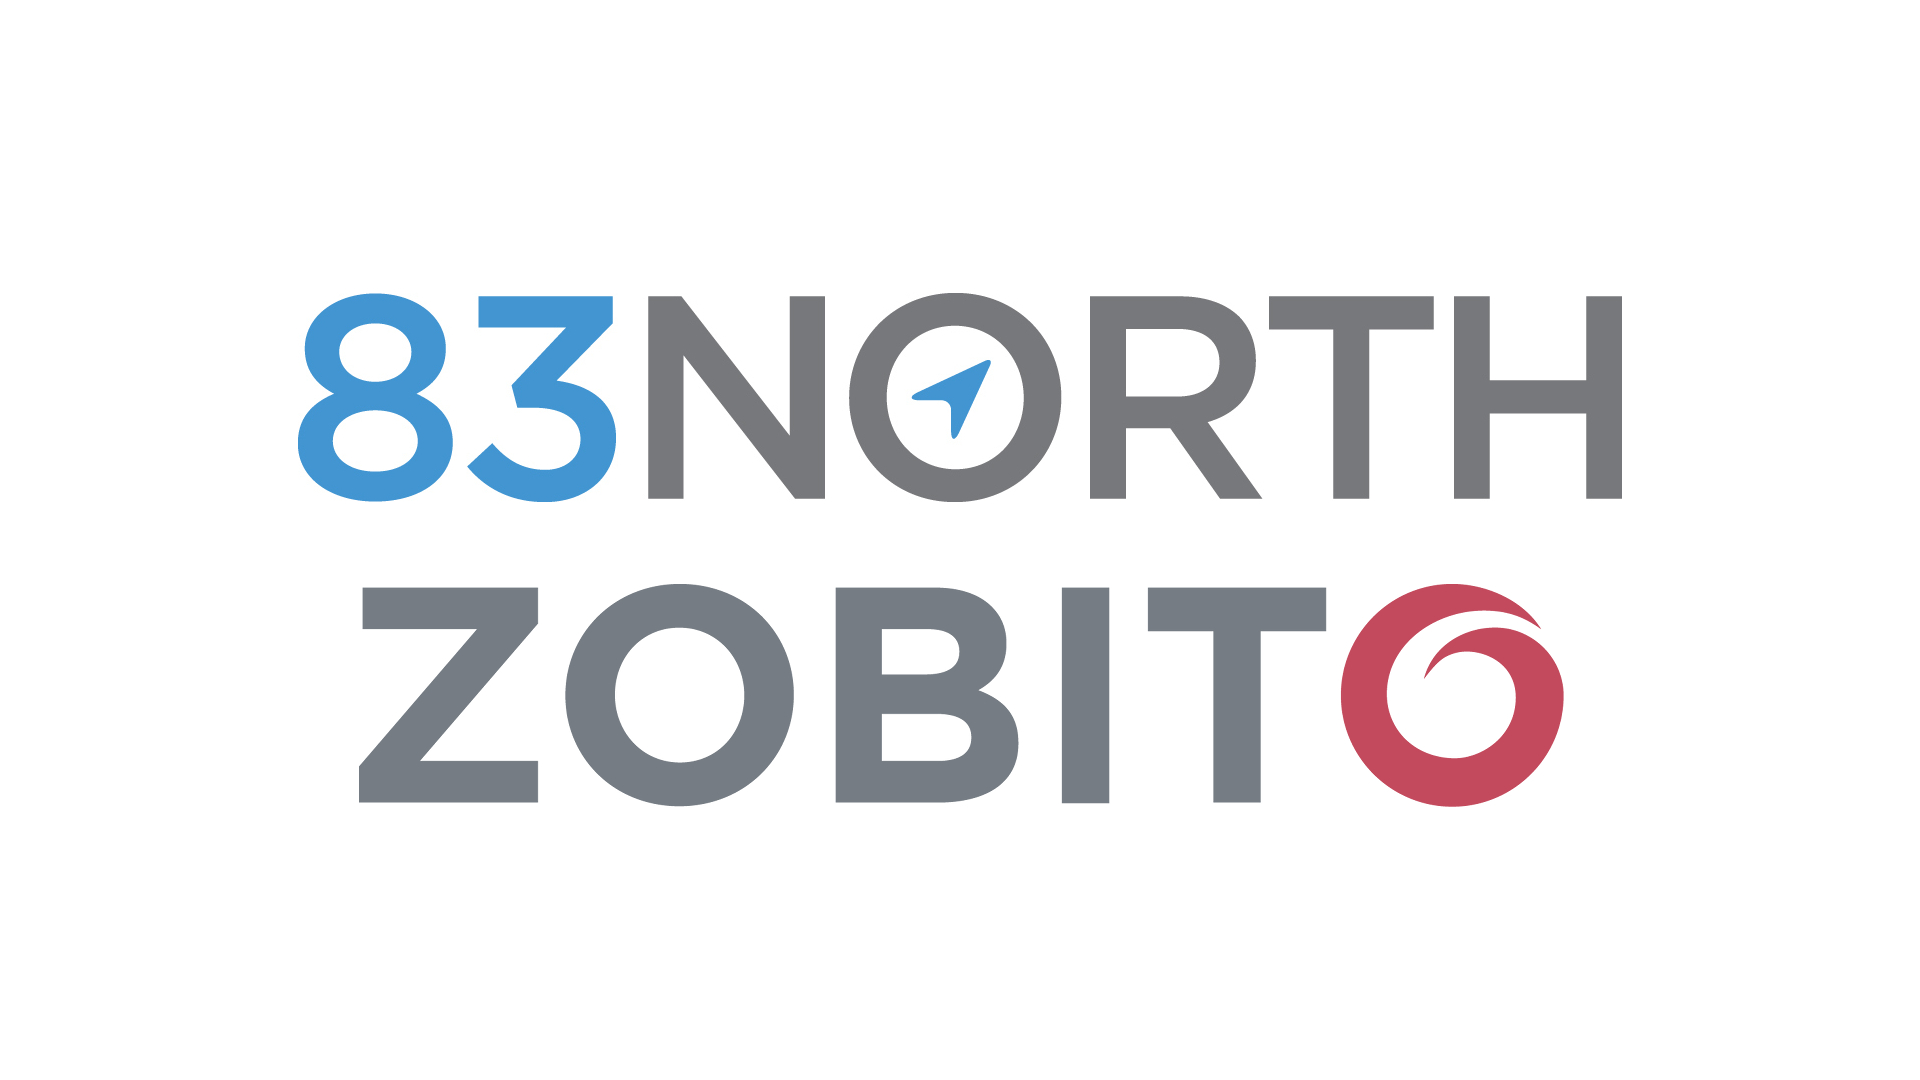 83 North - Zobito